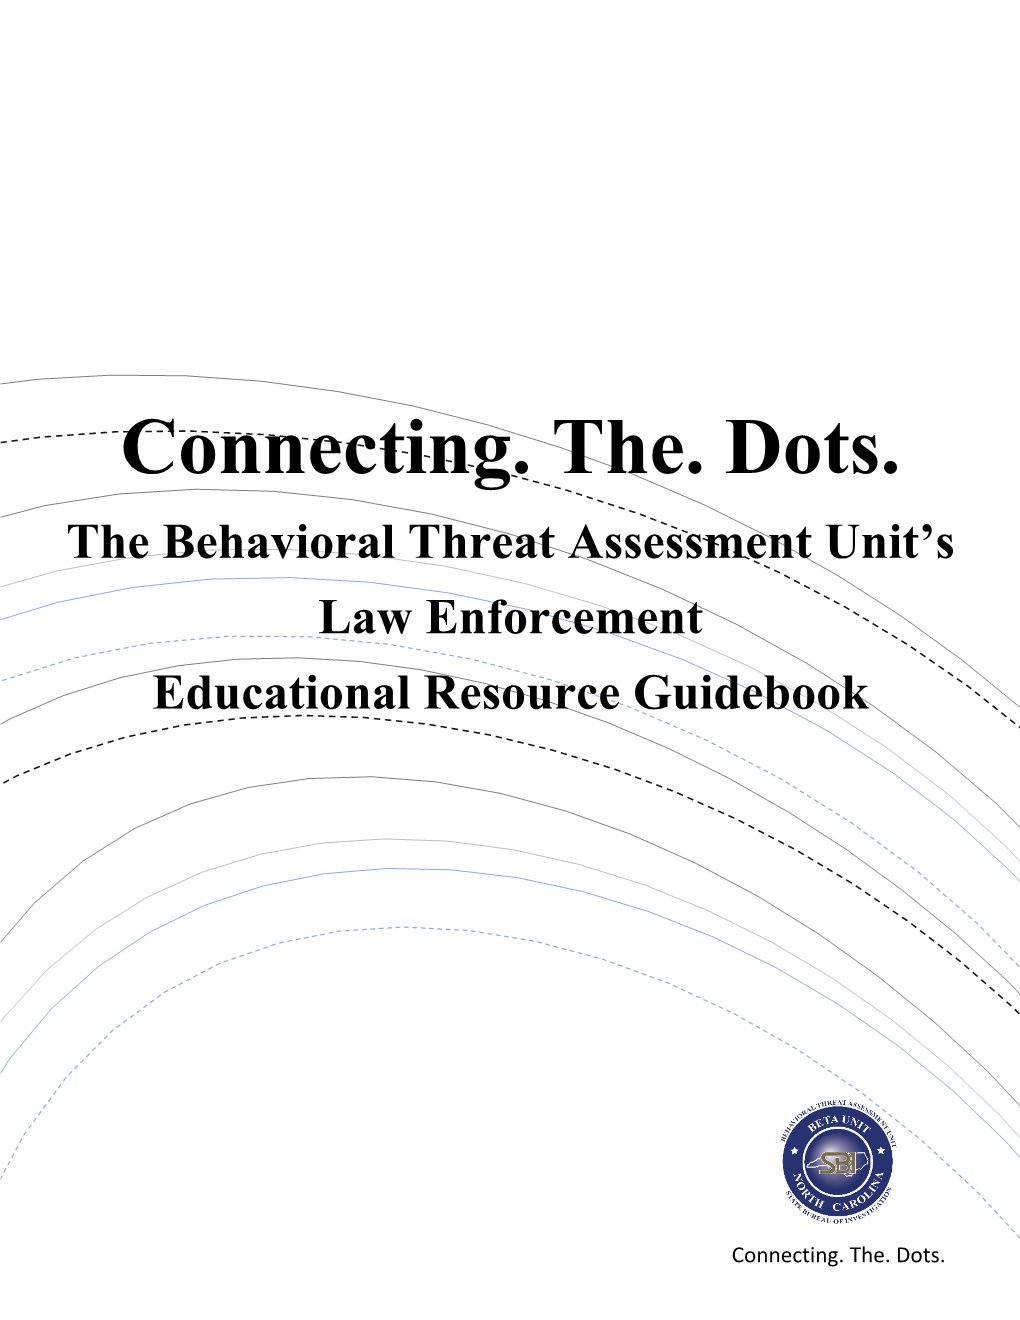 The Behavioral Threat Assessment Unit's Law Enforcement